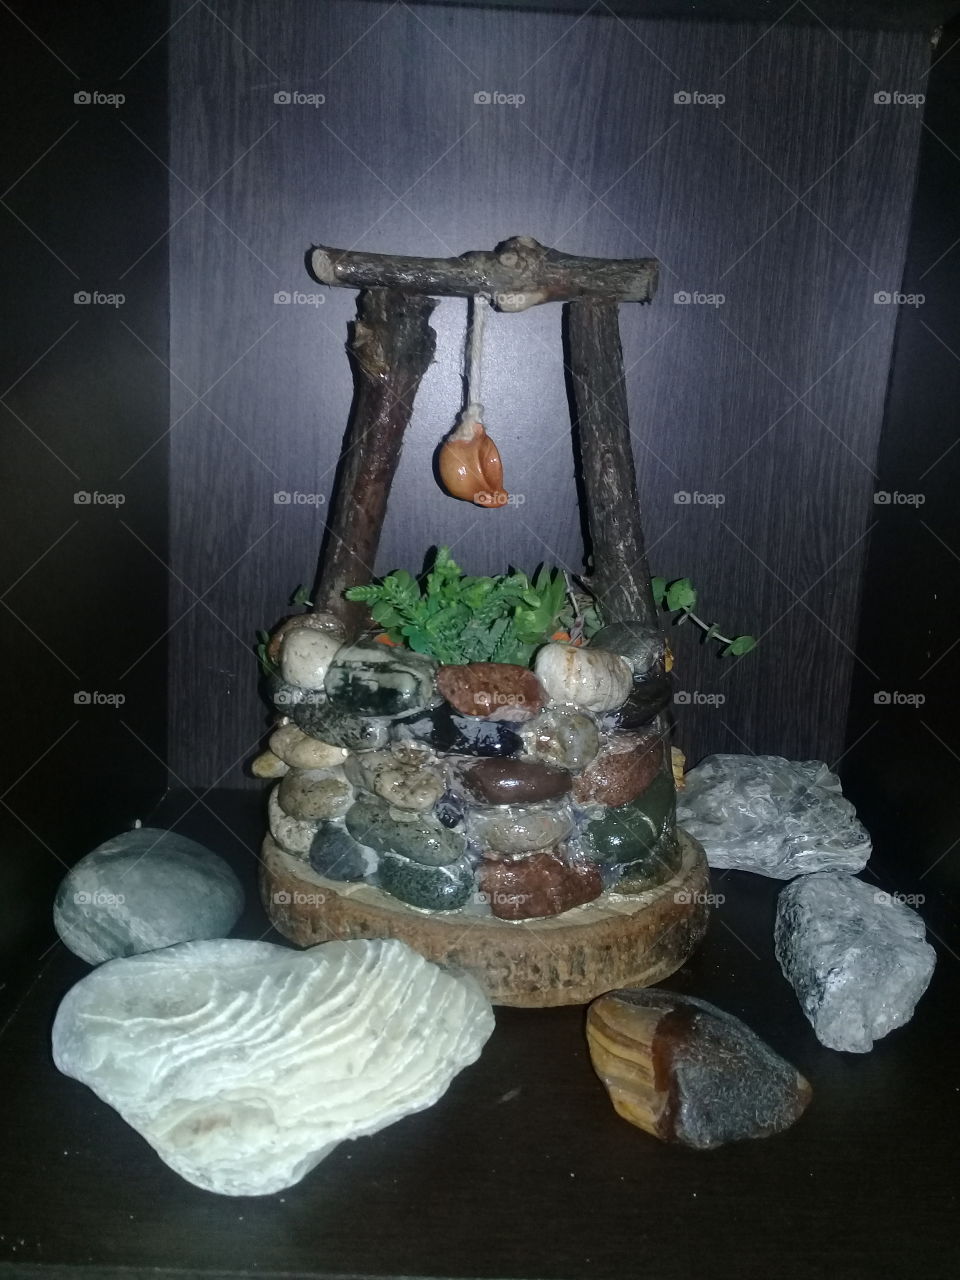 pequeño aljibe realizado en piedra u troncos, rodeado de piedras y caracoles, con una pequeña maceta con suculentas de varias clases.